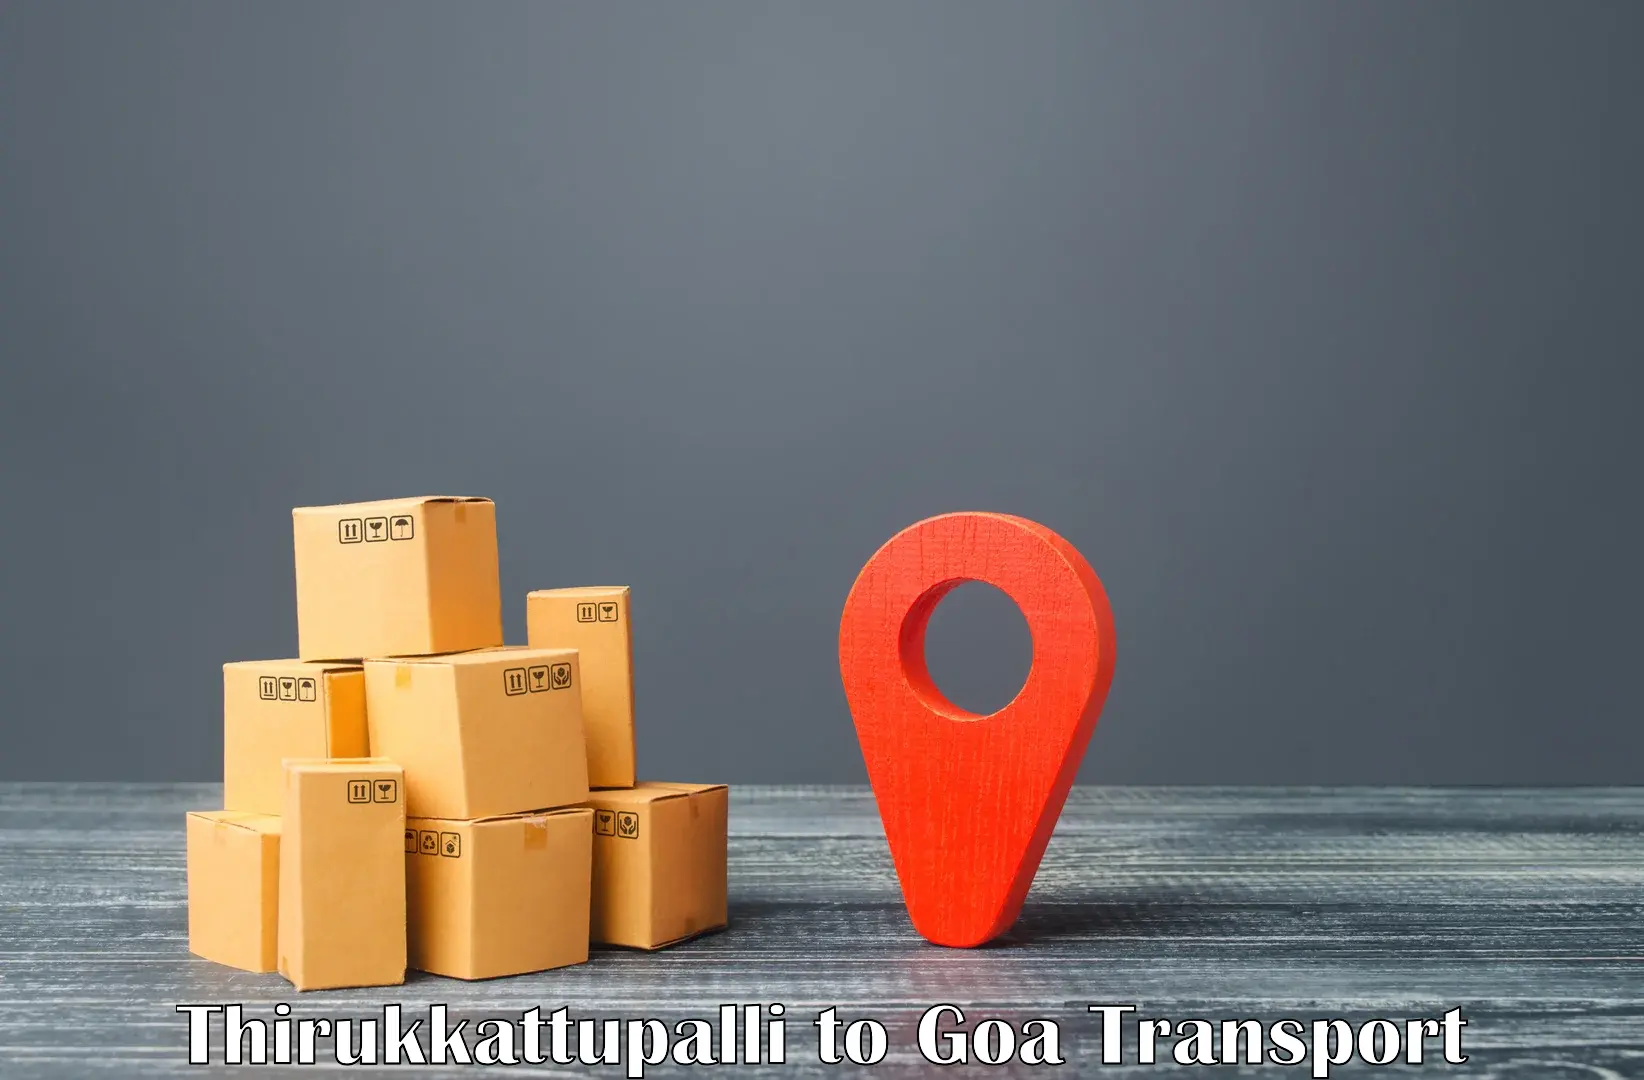 Nearby transport service Thirukkattupalli to Vasco da Gama